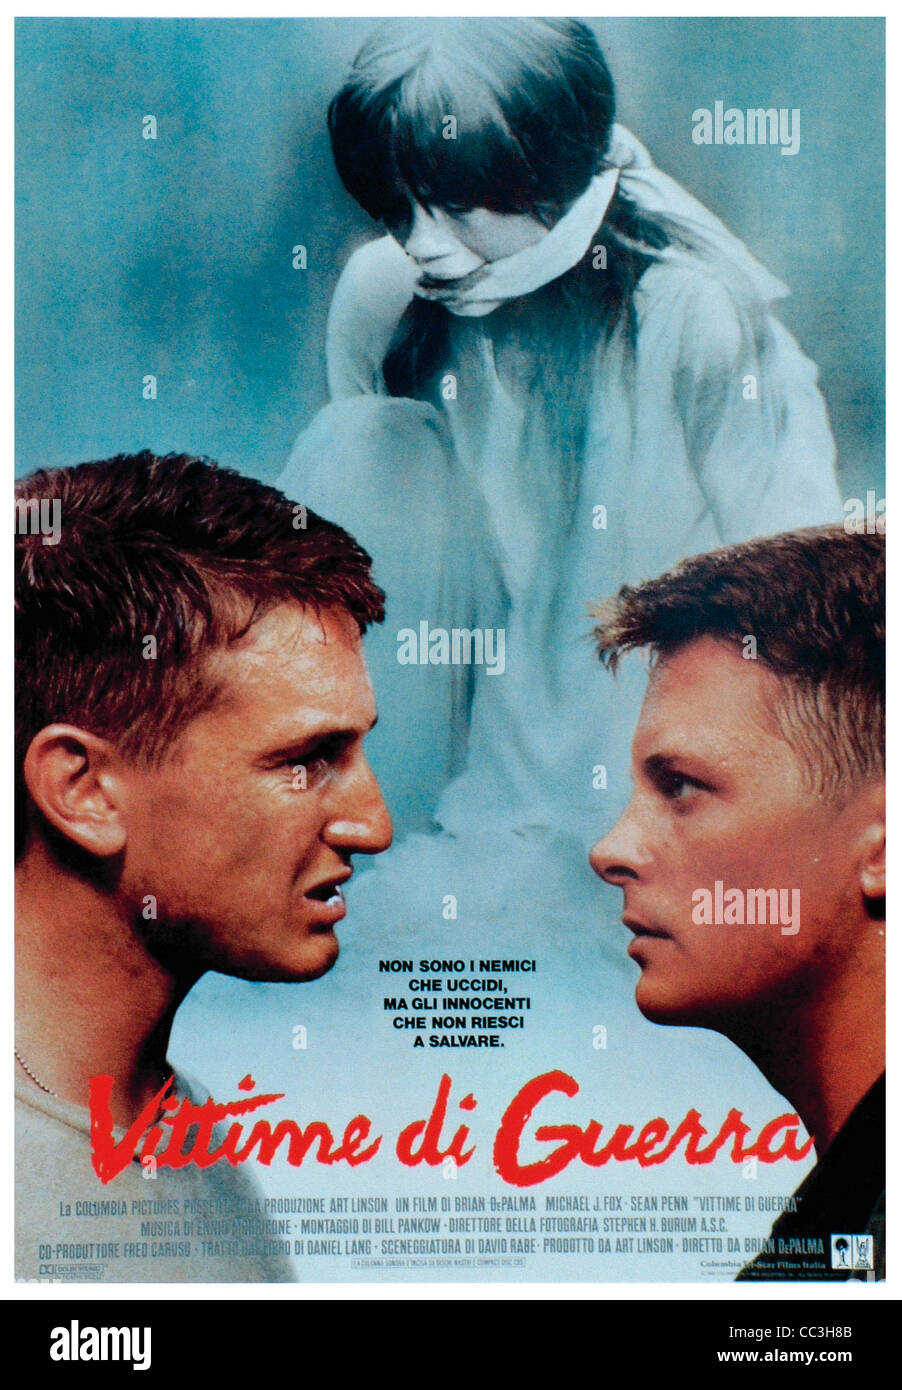 Cinema: le vittime della guerra Director Brian De Palma 1989 Poster Foto Stock